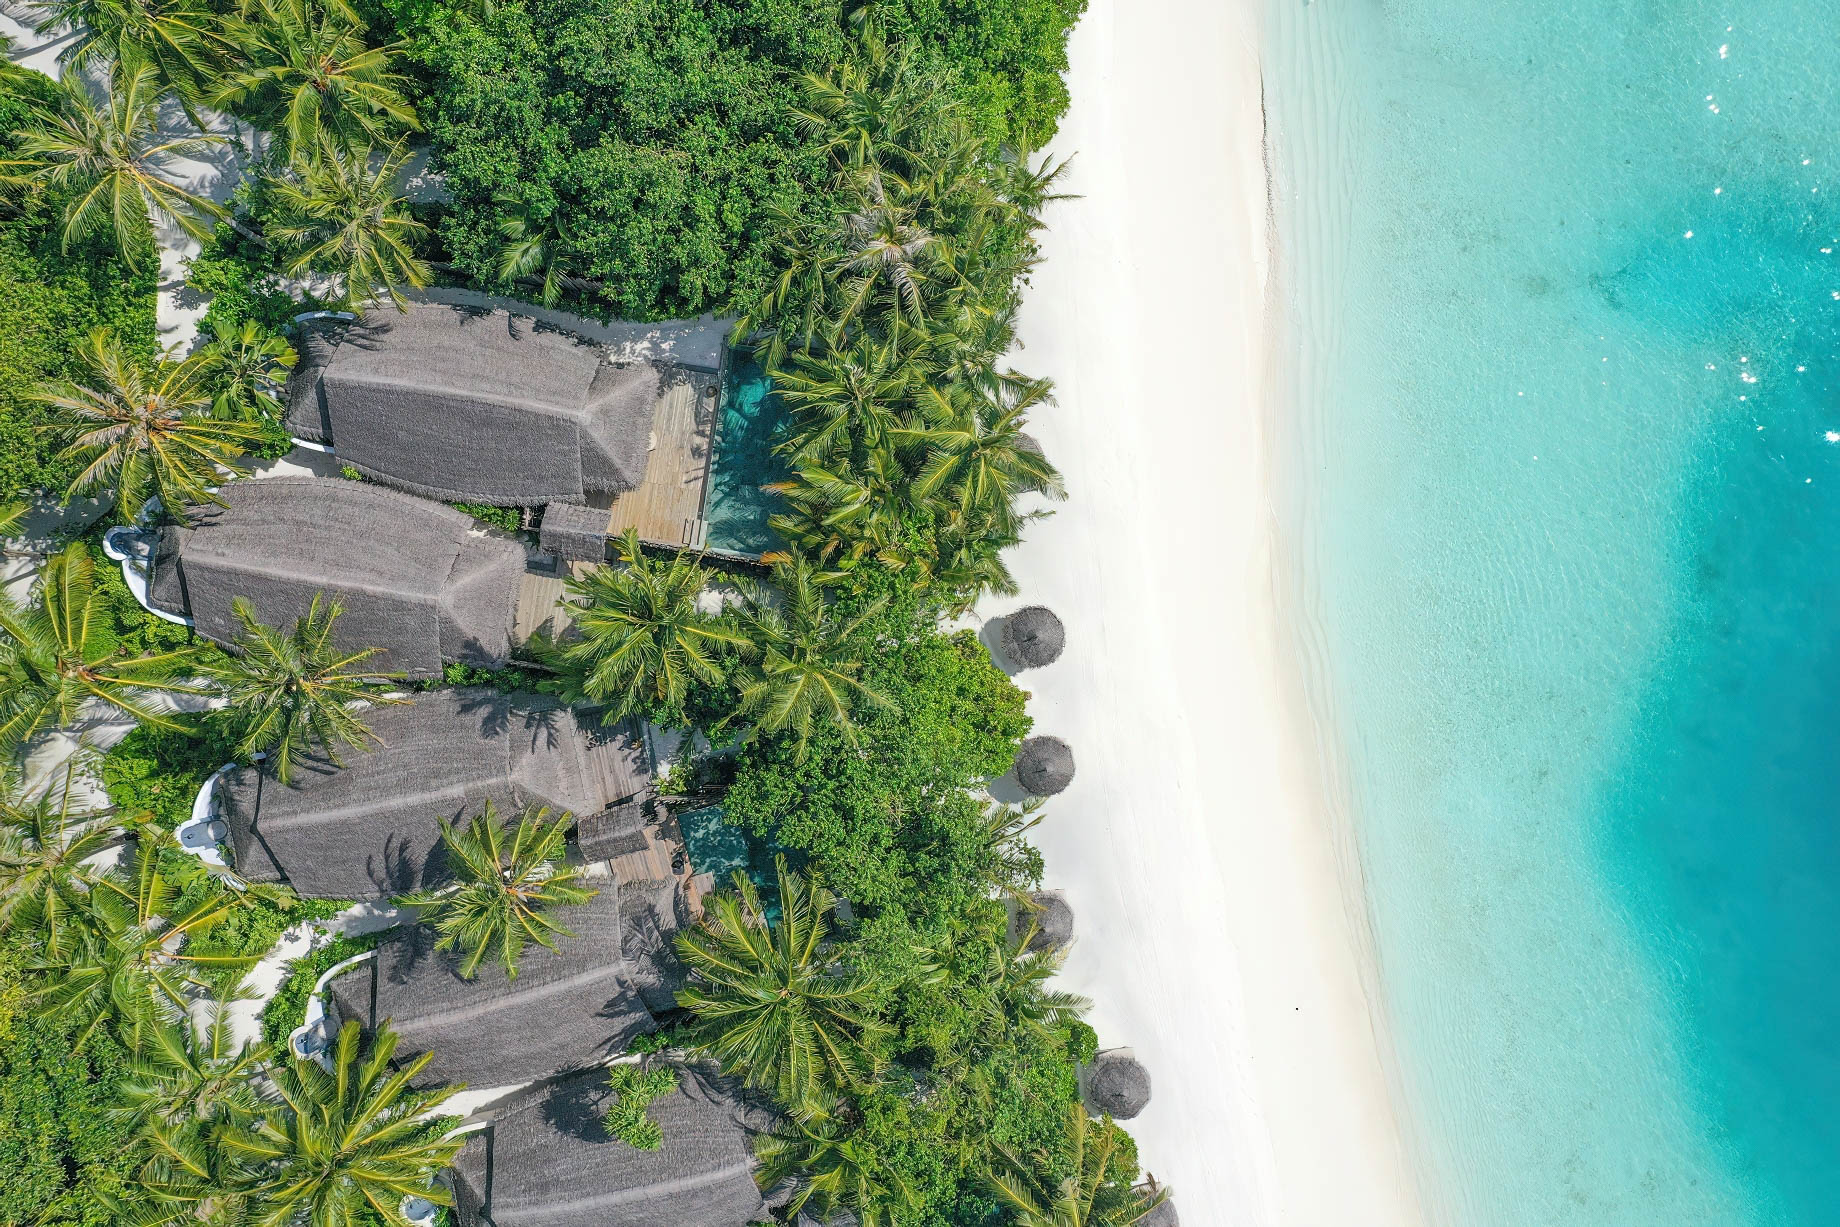 Anantara Thigu Maldives Resort – South Male Atoll, Maldives – Beach Villas Overhead Aerial View